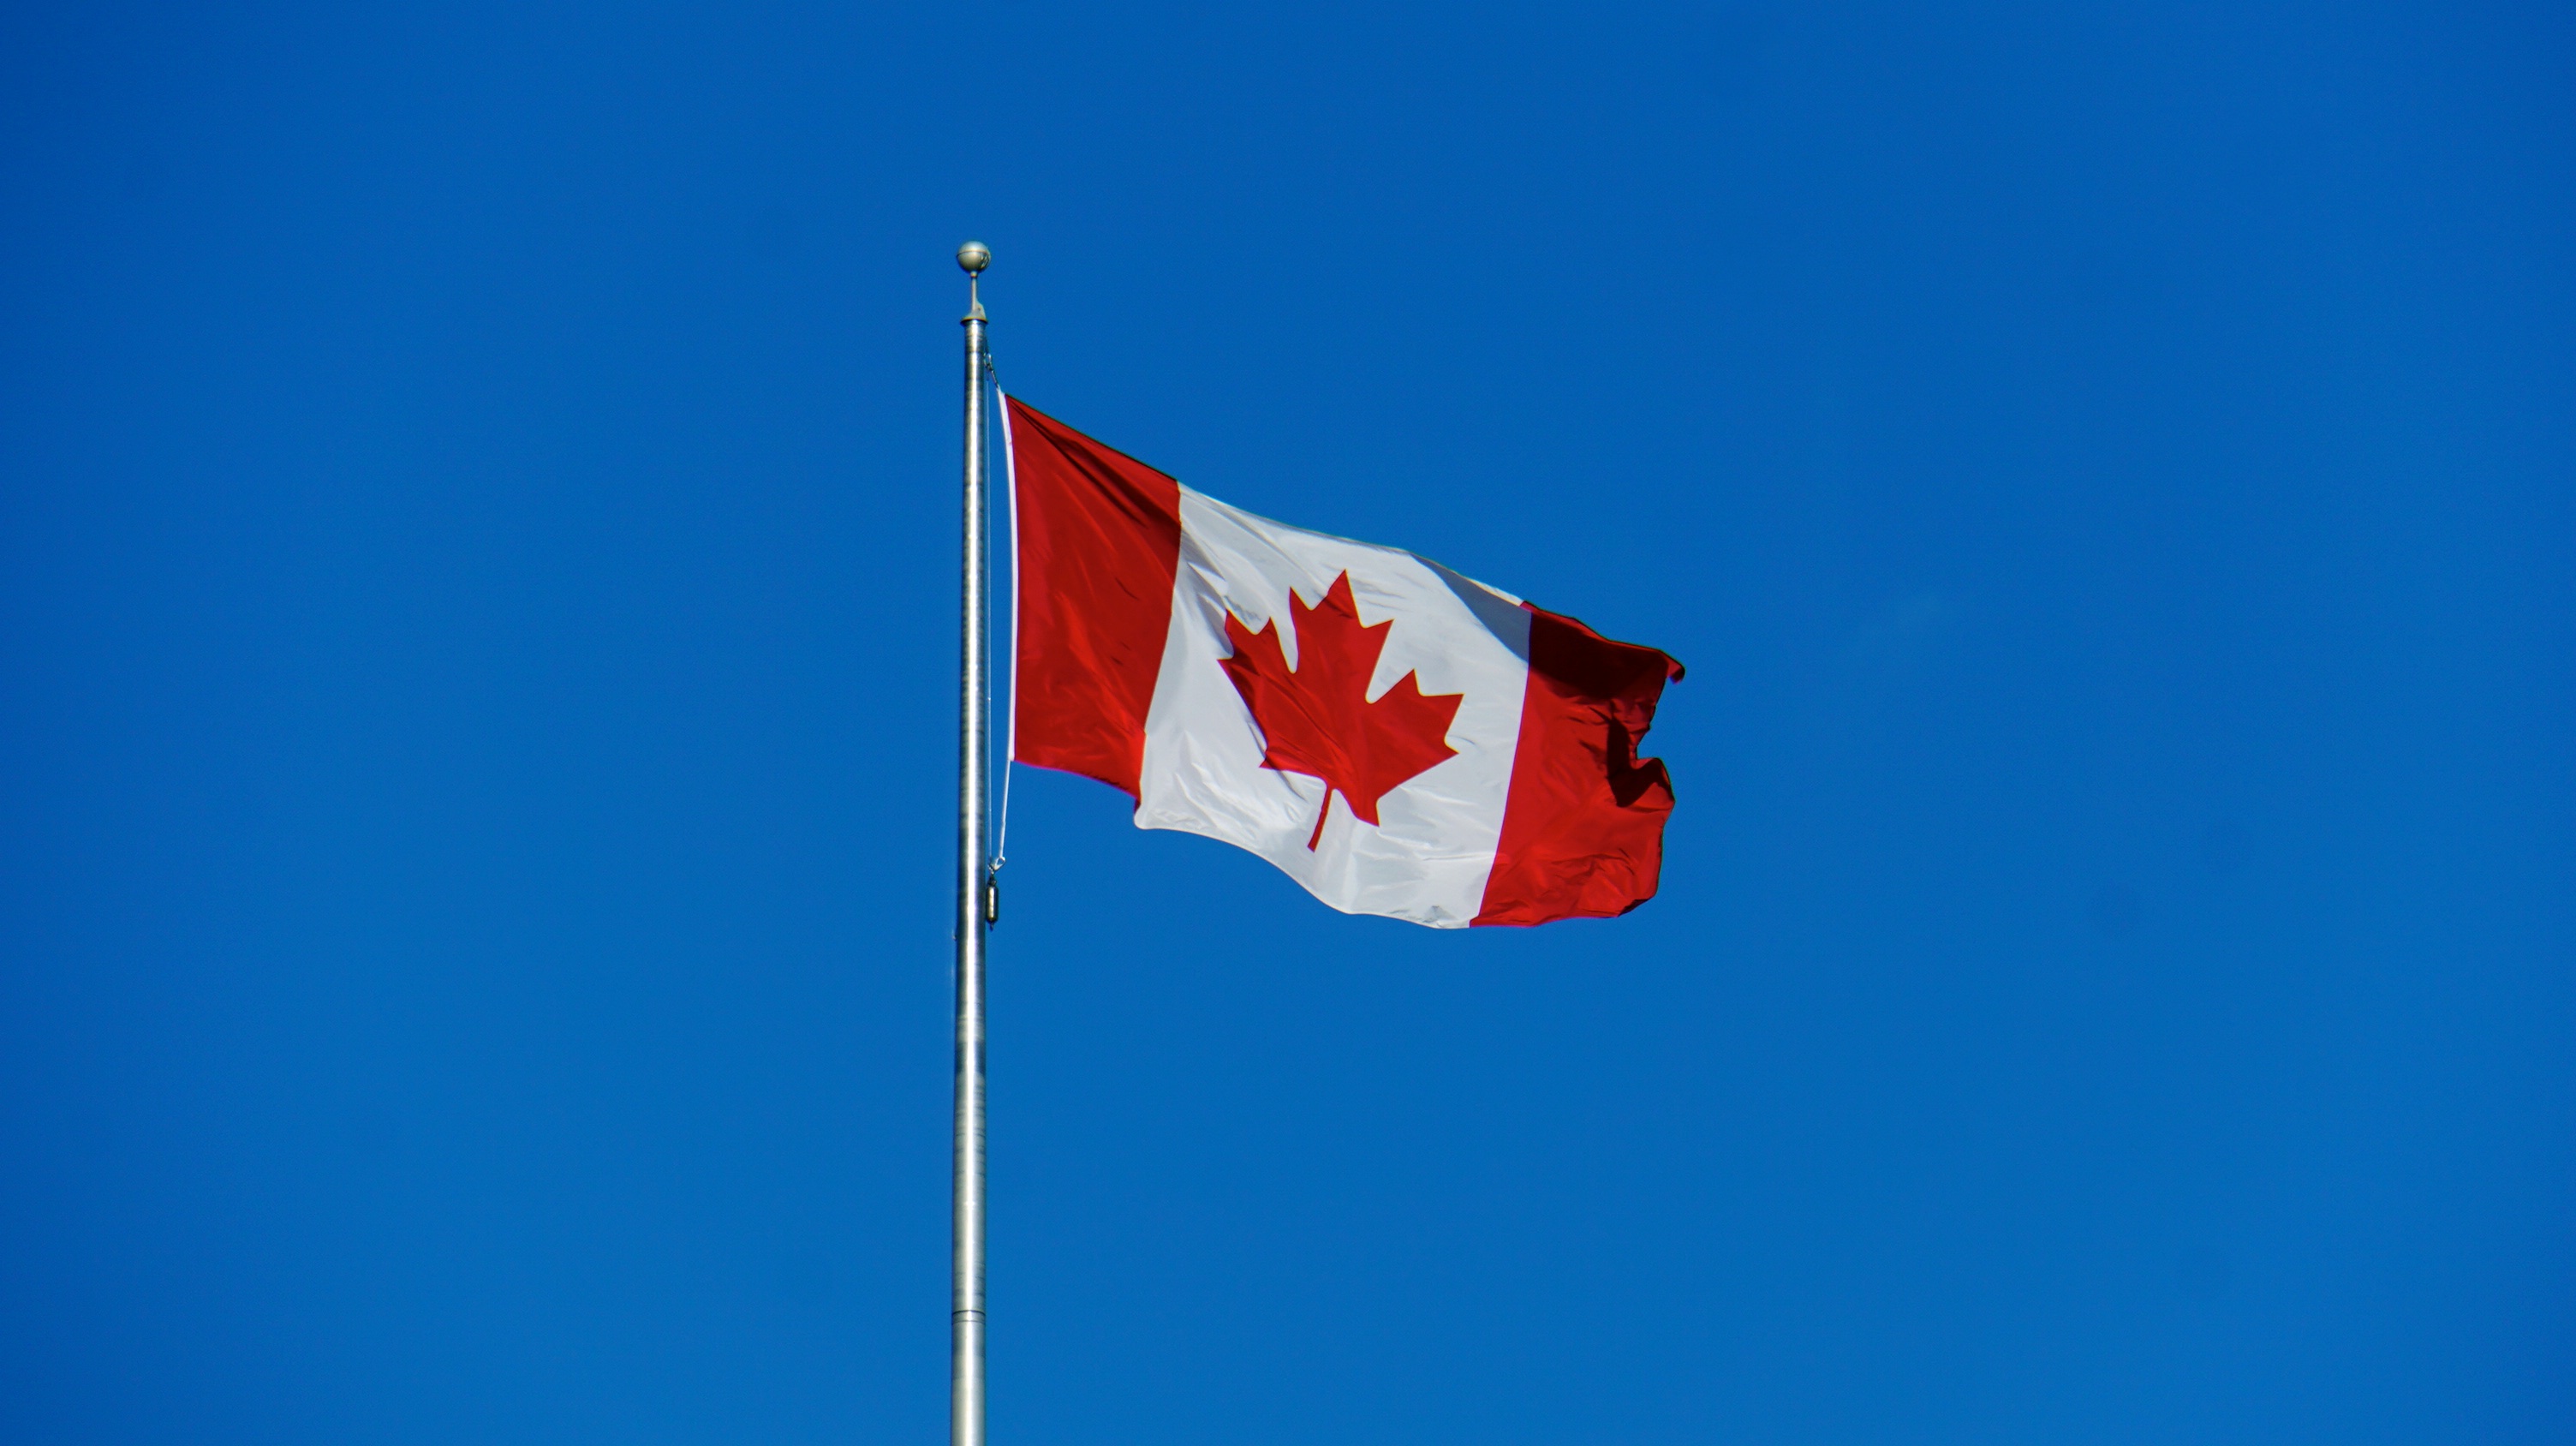 Flag Of Canada Wallpaper Desktop - Canadian Flag No Copyright - HD Wallpaper 